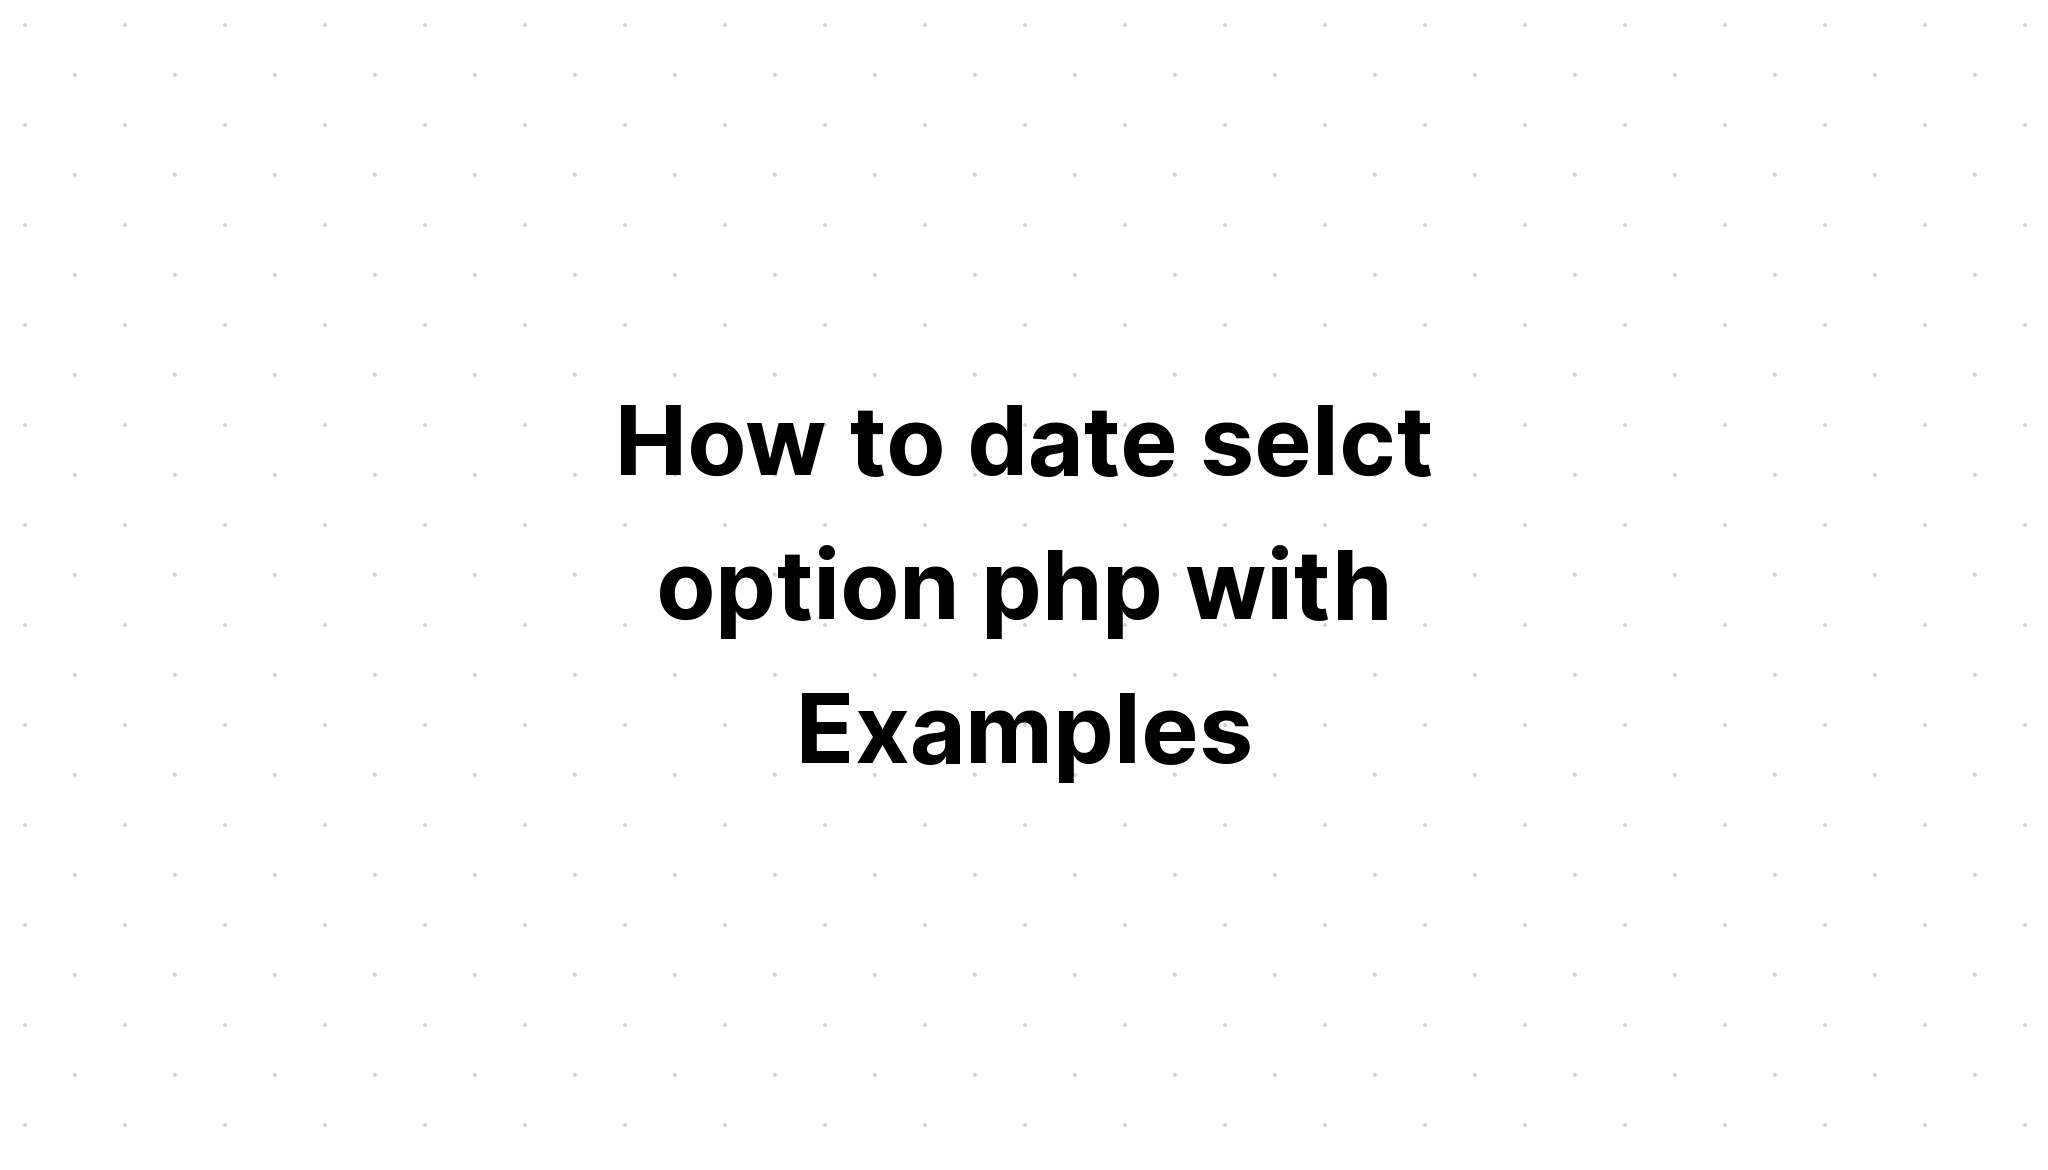 Cách chọn ngày chọn tùy chọn php với các ví dụ